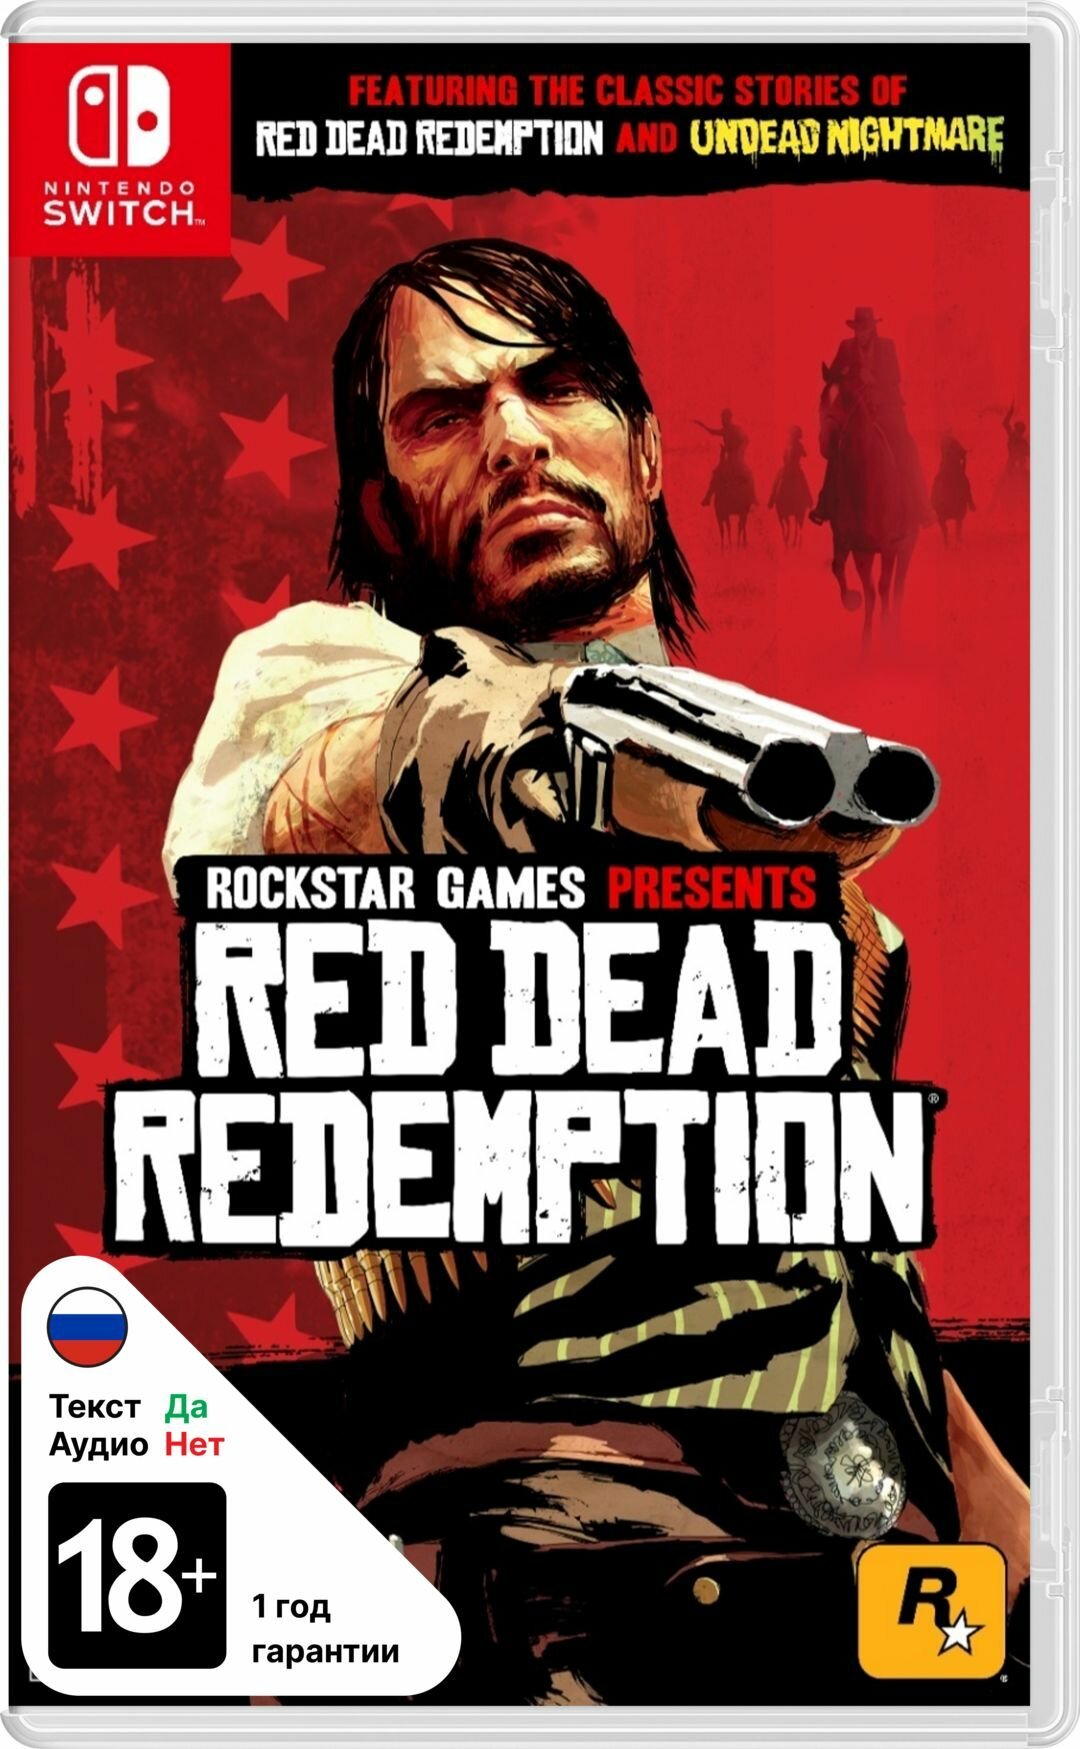 Игра Nintendo Switch на картридже Red Dead Redemption, русские субтитры - английская озвучка